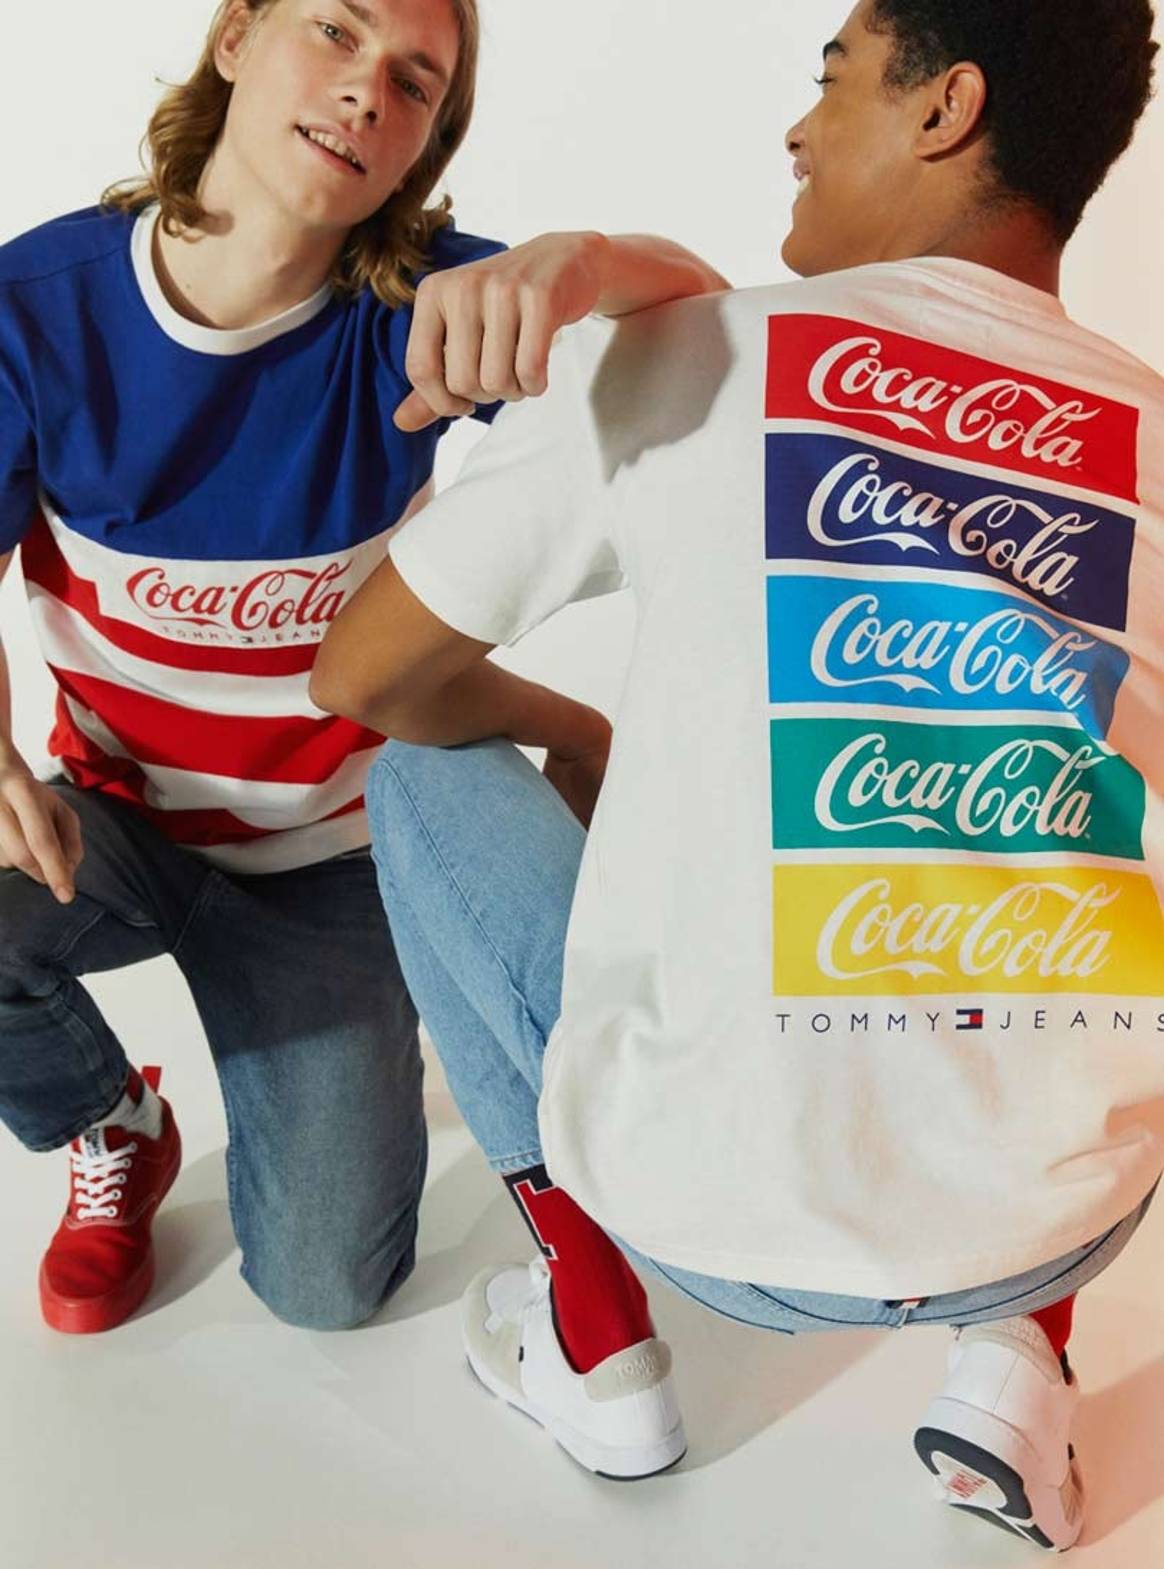 Oda a USA: Tommy reedita su colección Coca-Cola de 1986